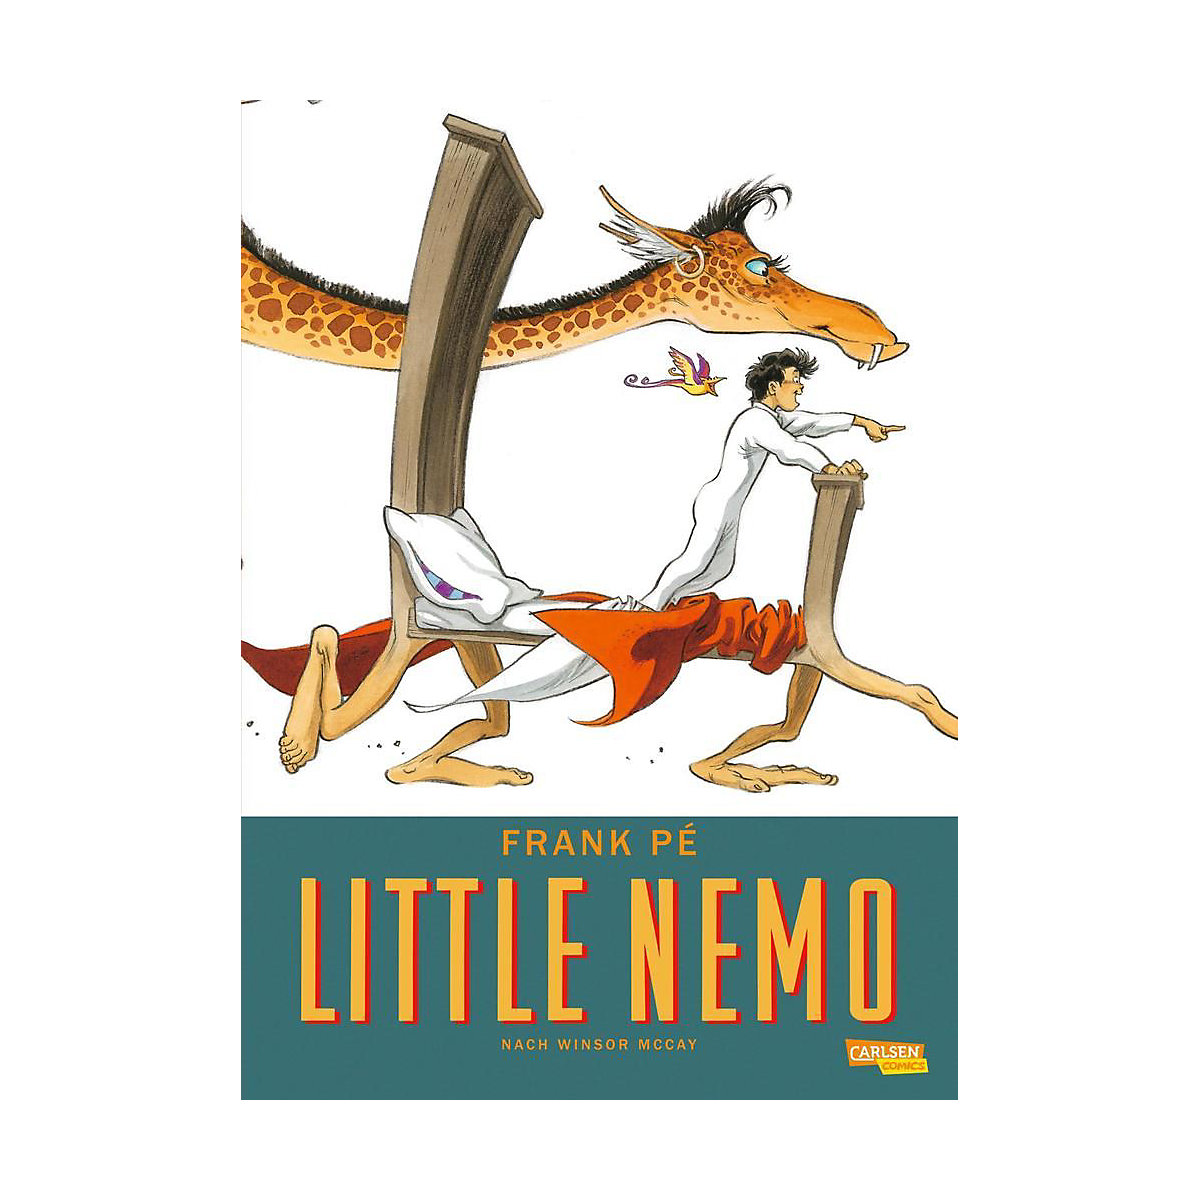 Little Nemo Eine Hommage von Frank Pé